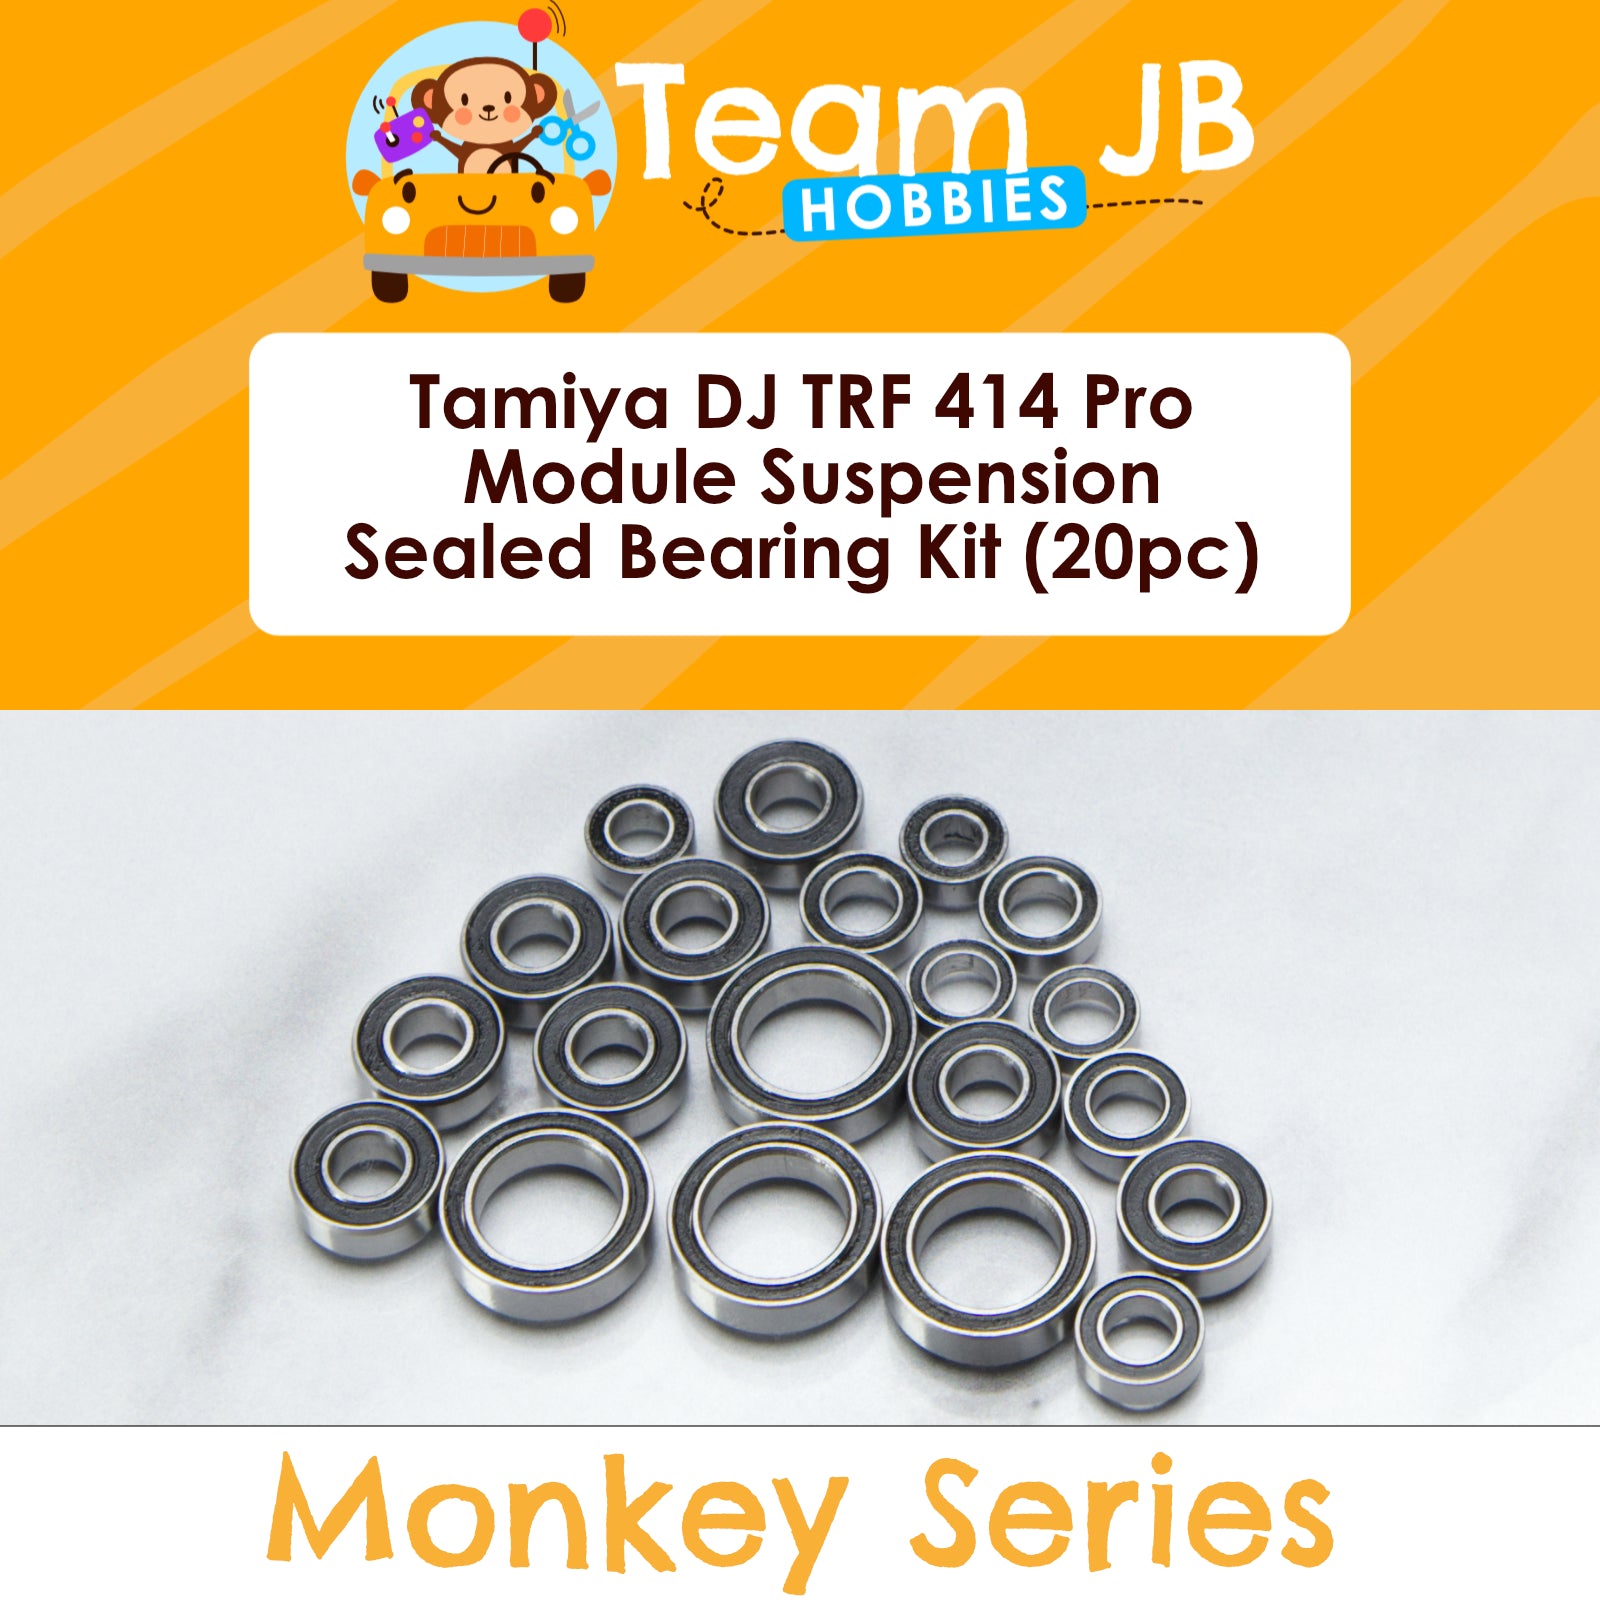 Tamiya DJ TRF 414 Pro Module Suspension - Sealed Bearing Kit